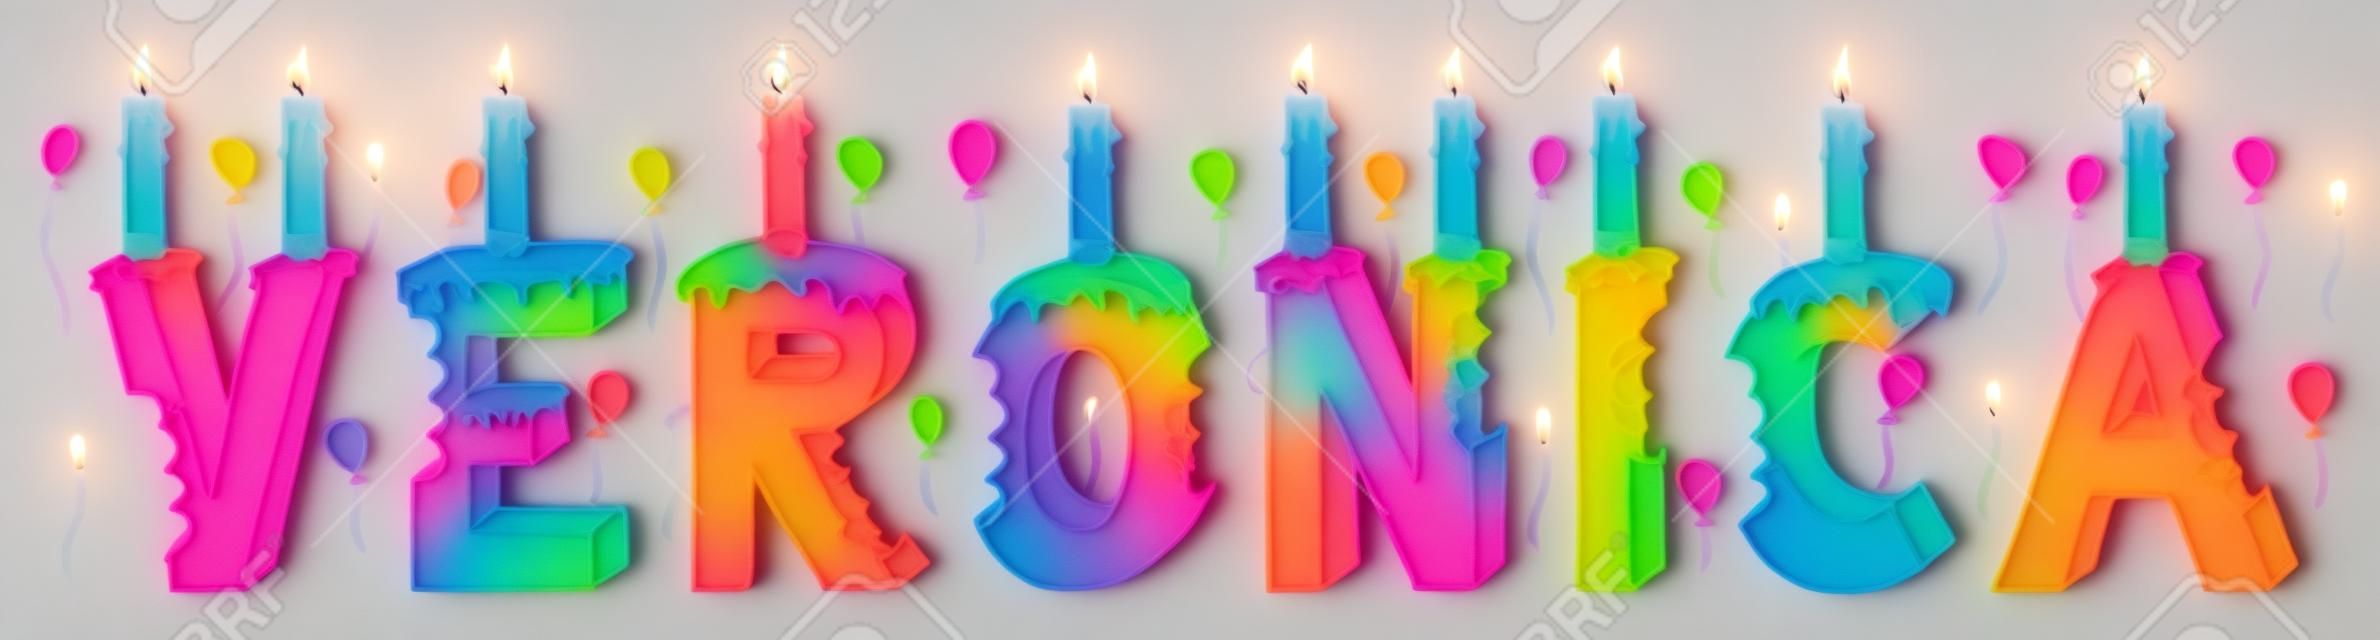 베로니카 여성 이름은 물렸다. 촛불과 풍선으로 화려한 3d 레터링 생일 케이크.